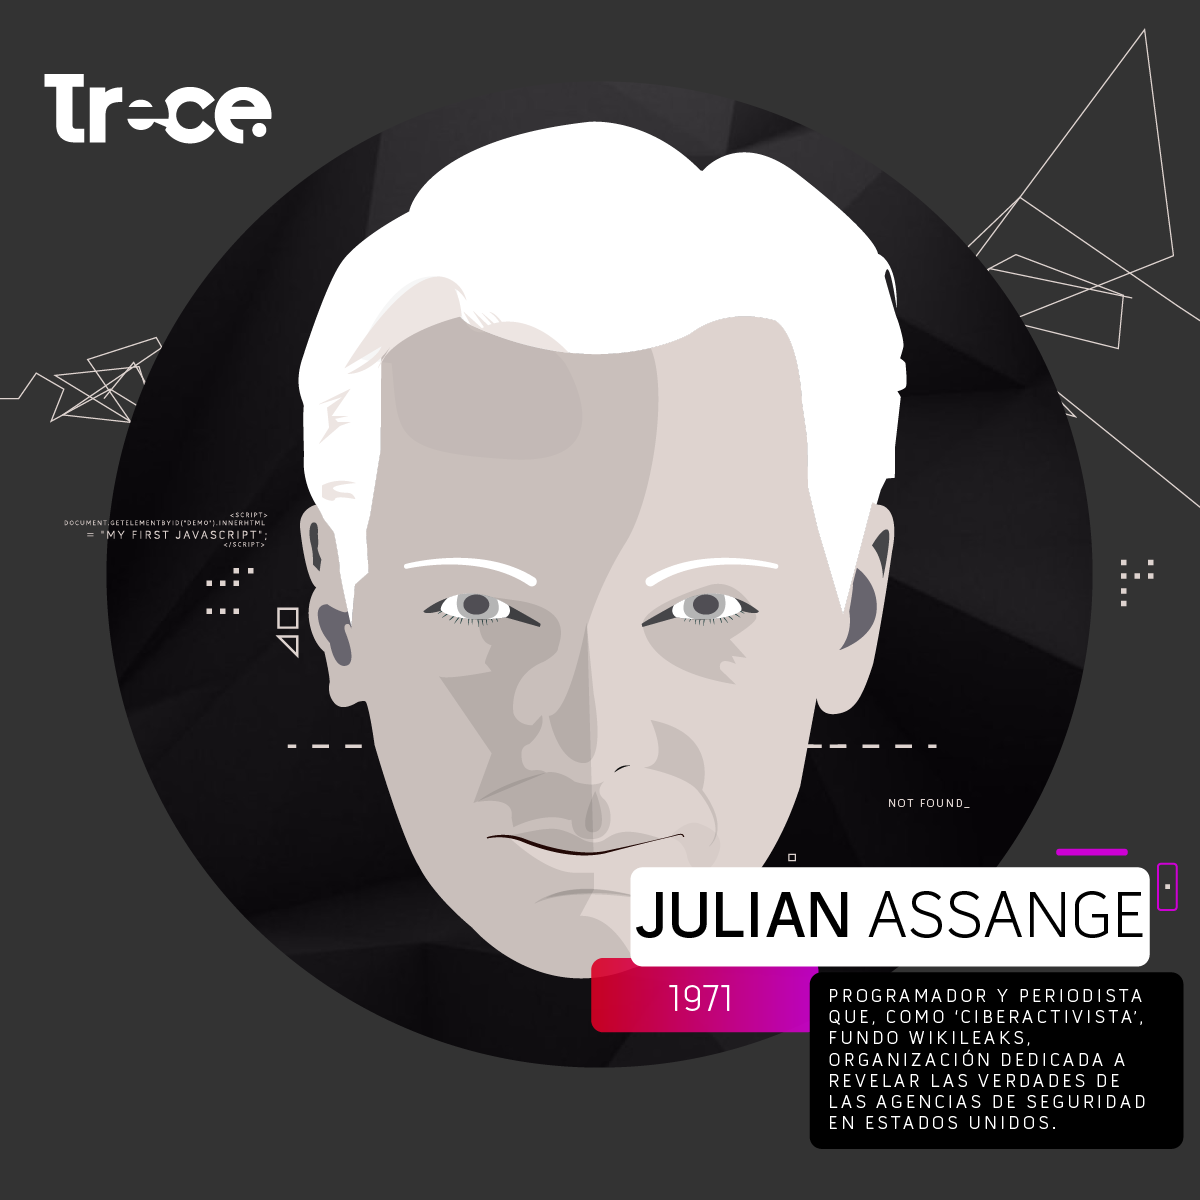 Quién es Julian Assange